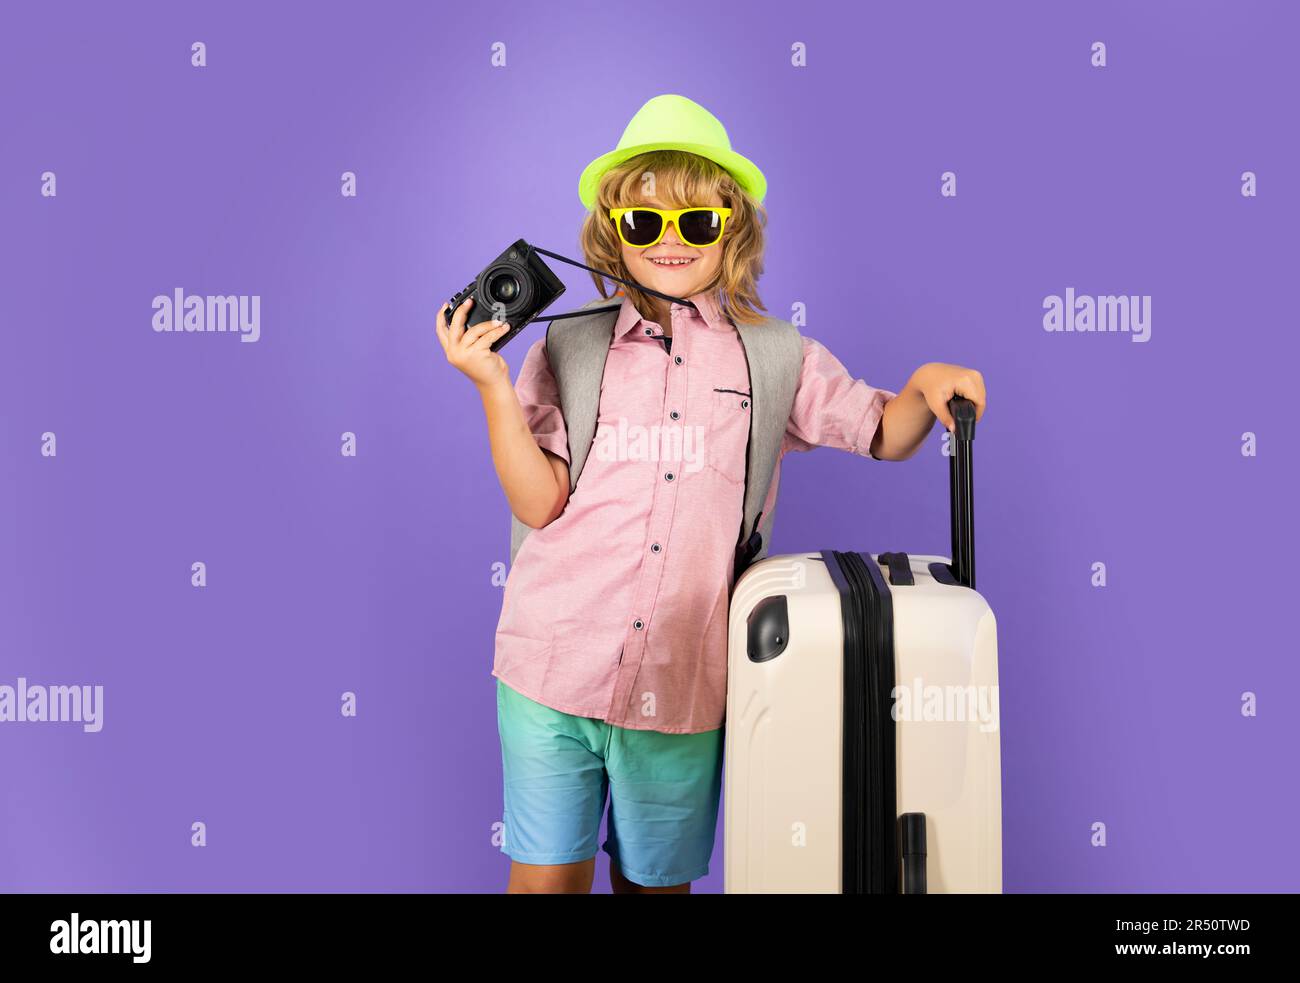 Kinderreisen mit Reisetasche. Kind mit Koffer träumt von Reisen, Abenteuer,  Urlaub. Studiokinder-Porträt Stockfotografie - Alamy